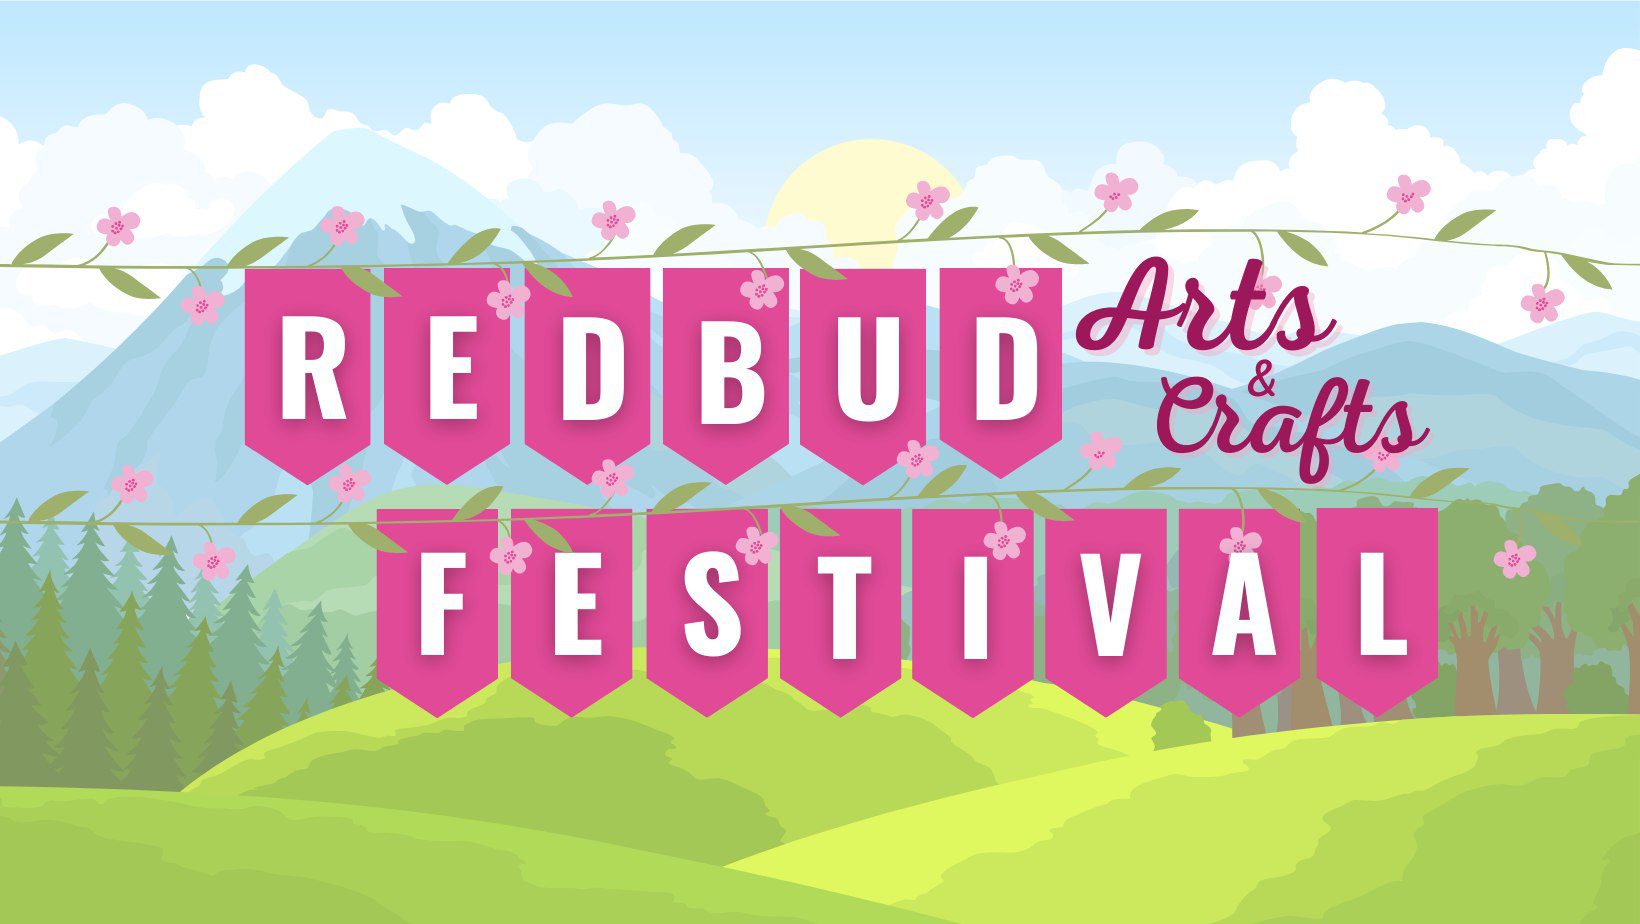 14th Annual Dayton Redbud Spring Arts & Crafts Festival